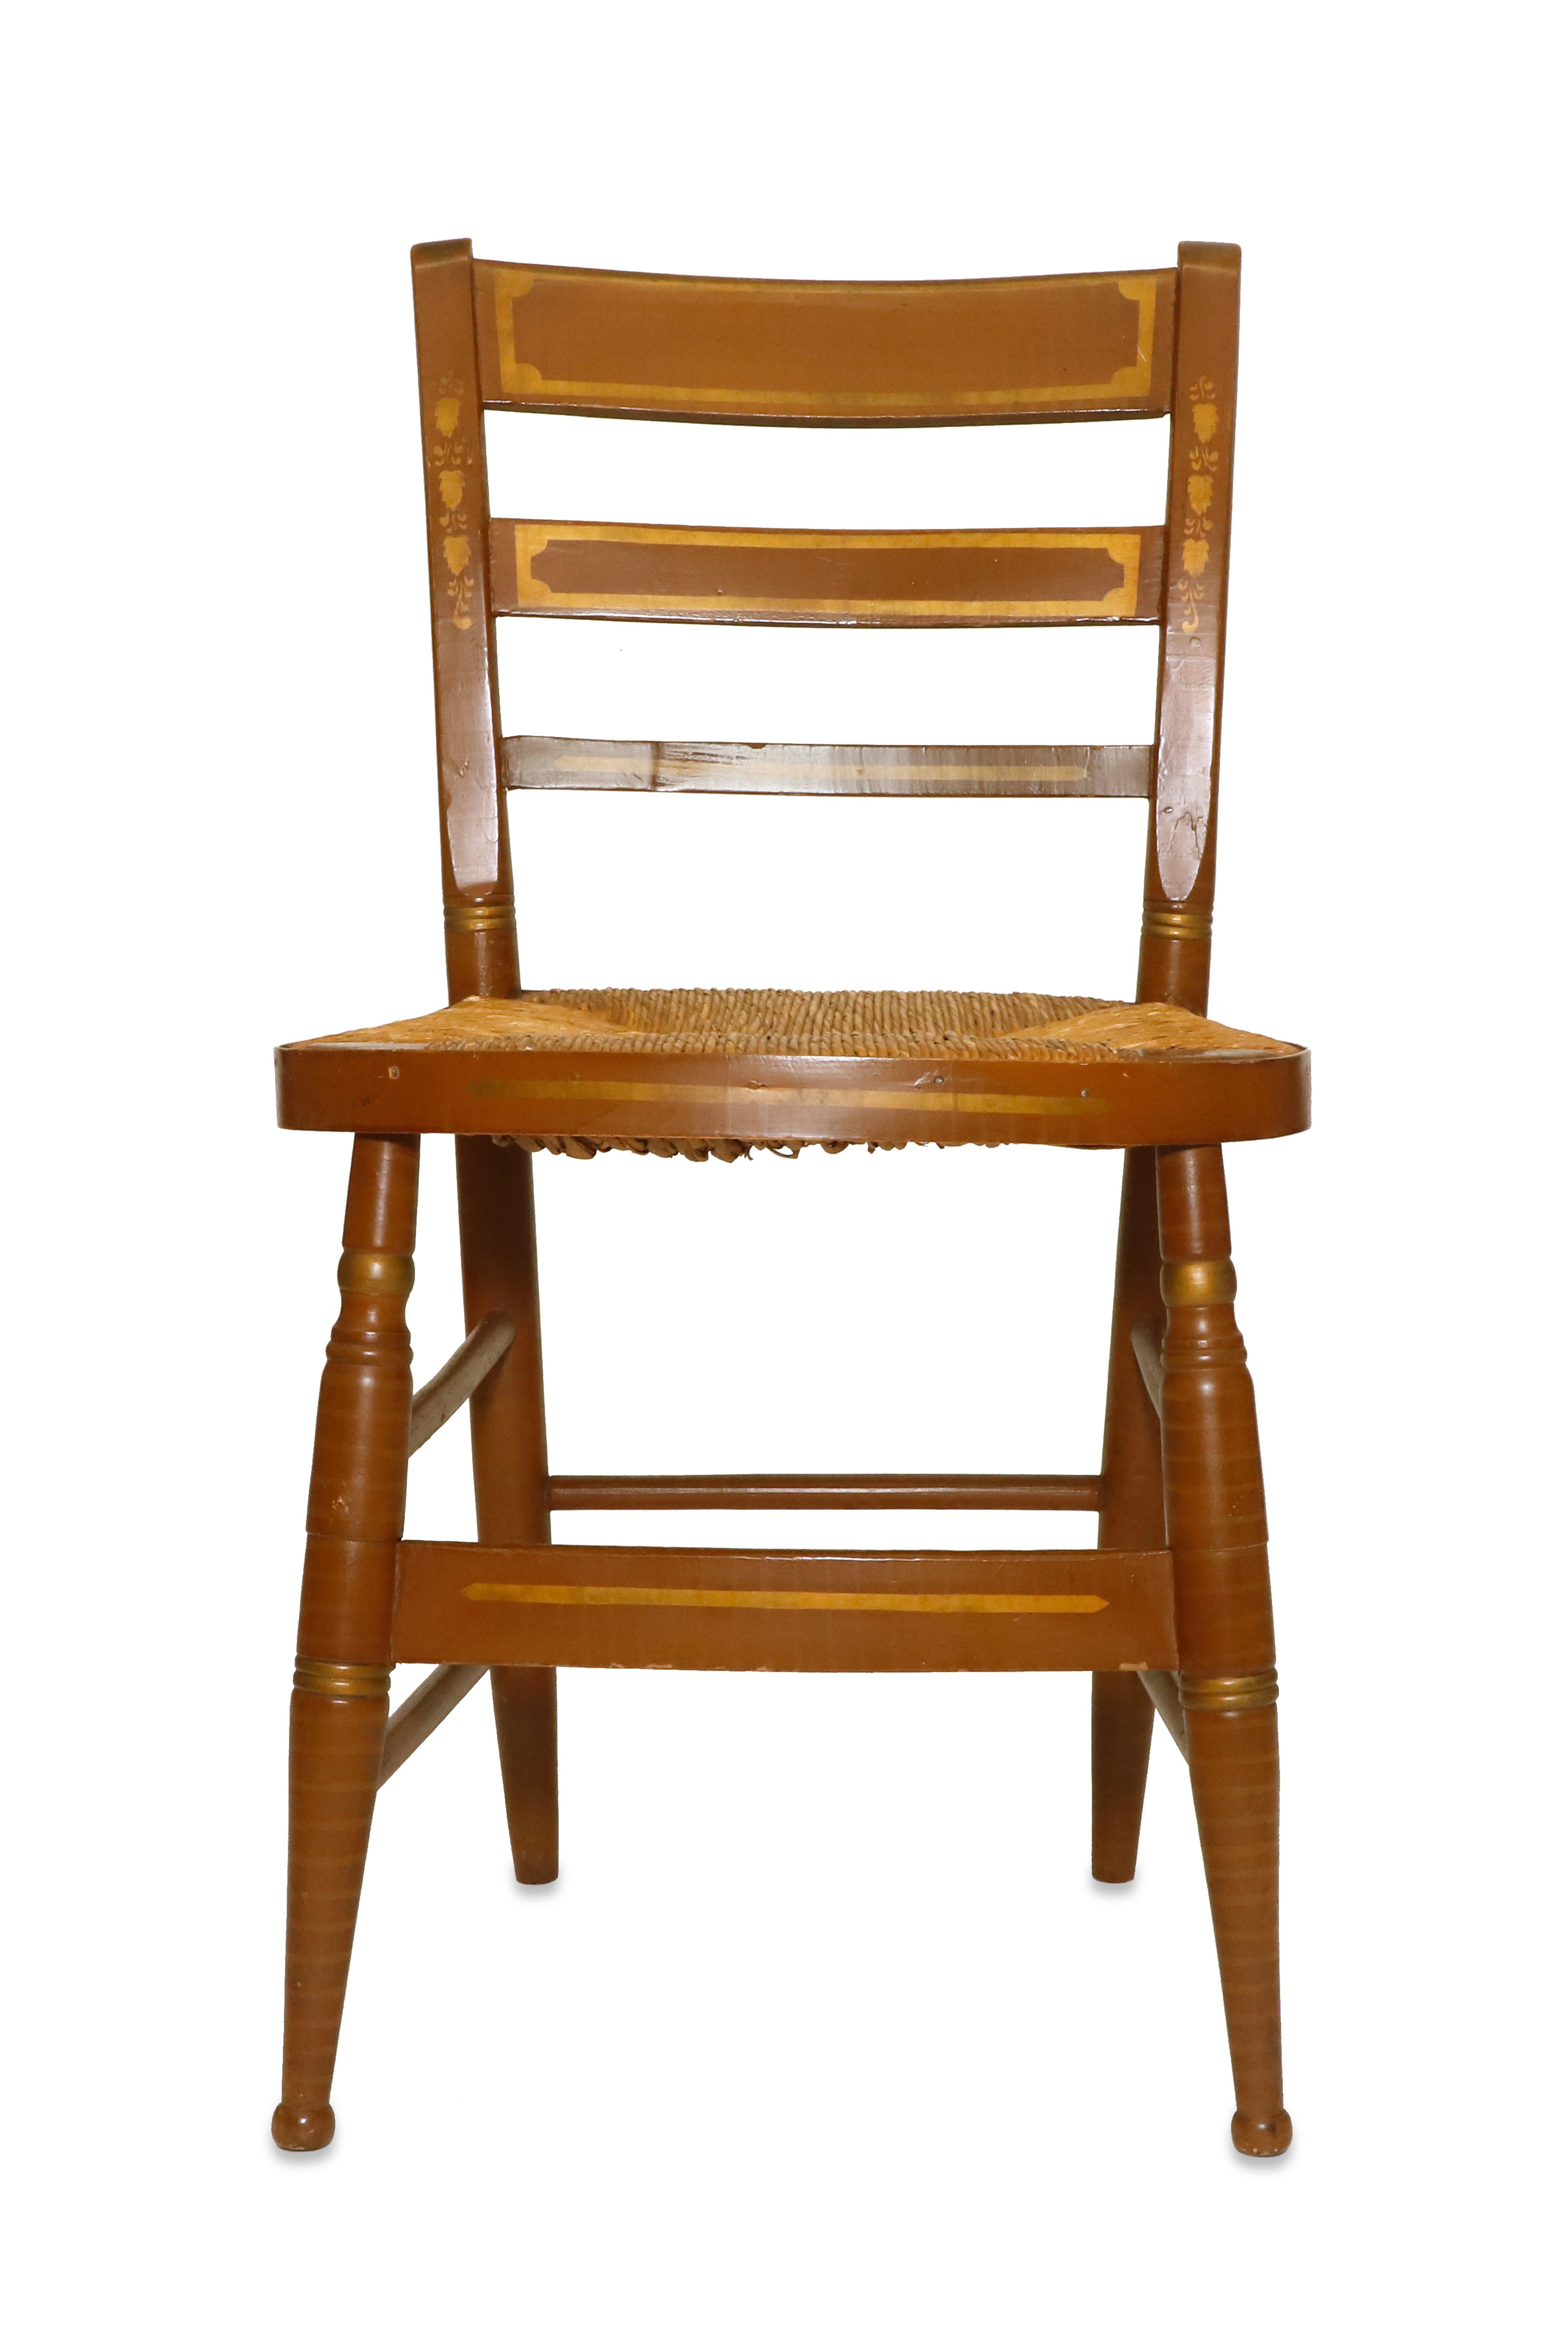 Sechs französische Stühle mit geflochtenem Strohsitz

Eigentum des geschätzten Innenarchitekten Juan Montoya. Juan Montoya ist einer der renommiertesten und produktivsten Innenarchitekten der heutigen Welt. Juan Montoya wurde in Kolumbien geboren